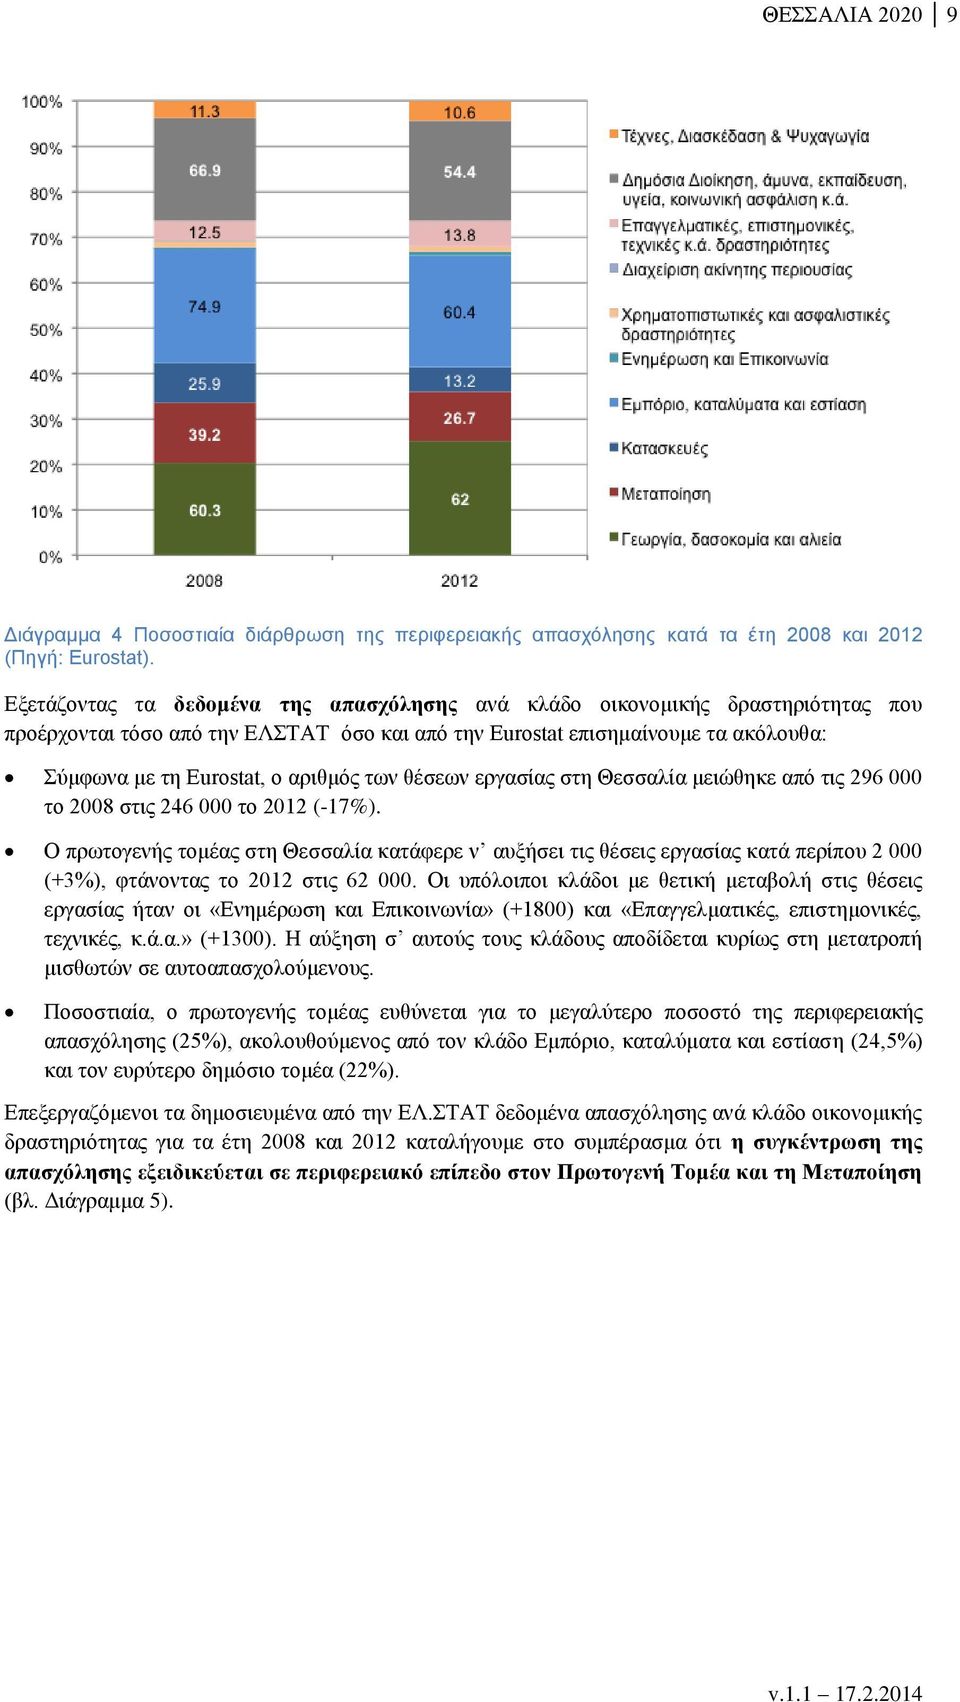 των θέσεων εργασίας στη Θεσσαλία μειώθηκε από τις 296 000 το 2008 στις 246 000 το 2012 (-17%).